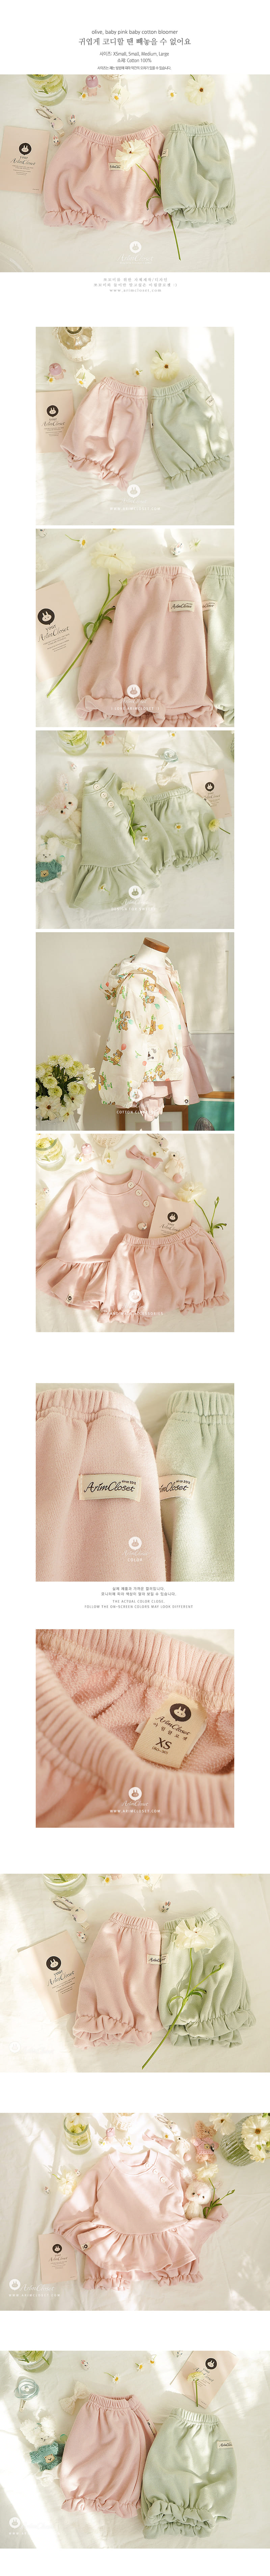 Arim Closet - Korean Children Fashion - #childrensboutique - Olive Baby Pink Baby C Bloomer - 2